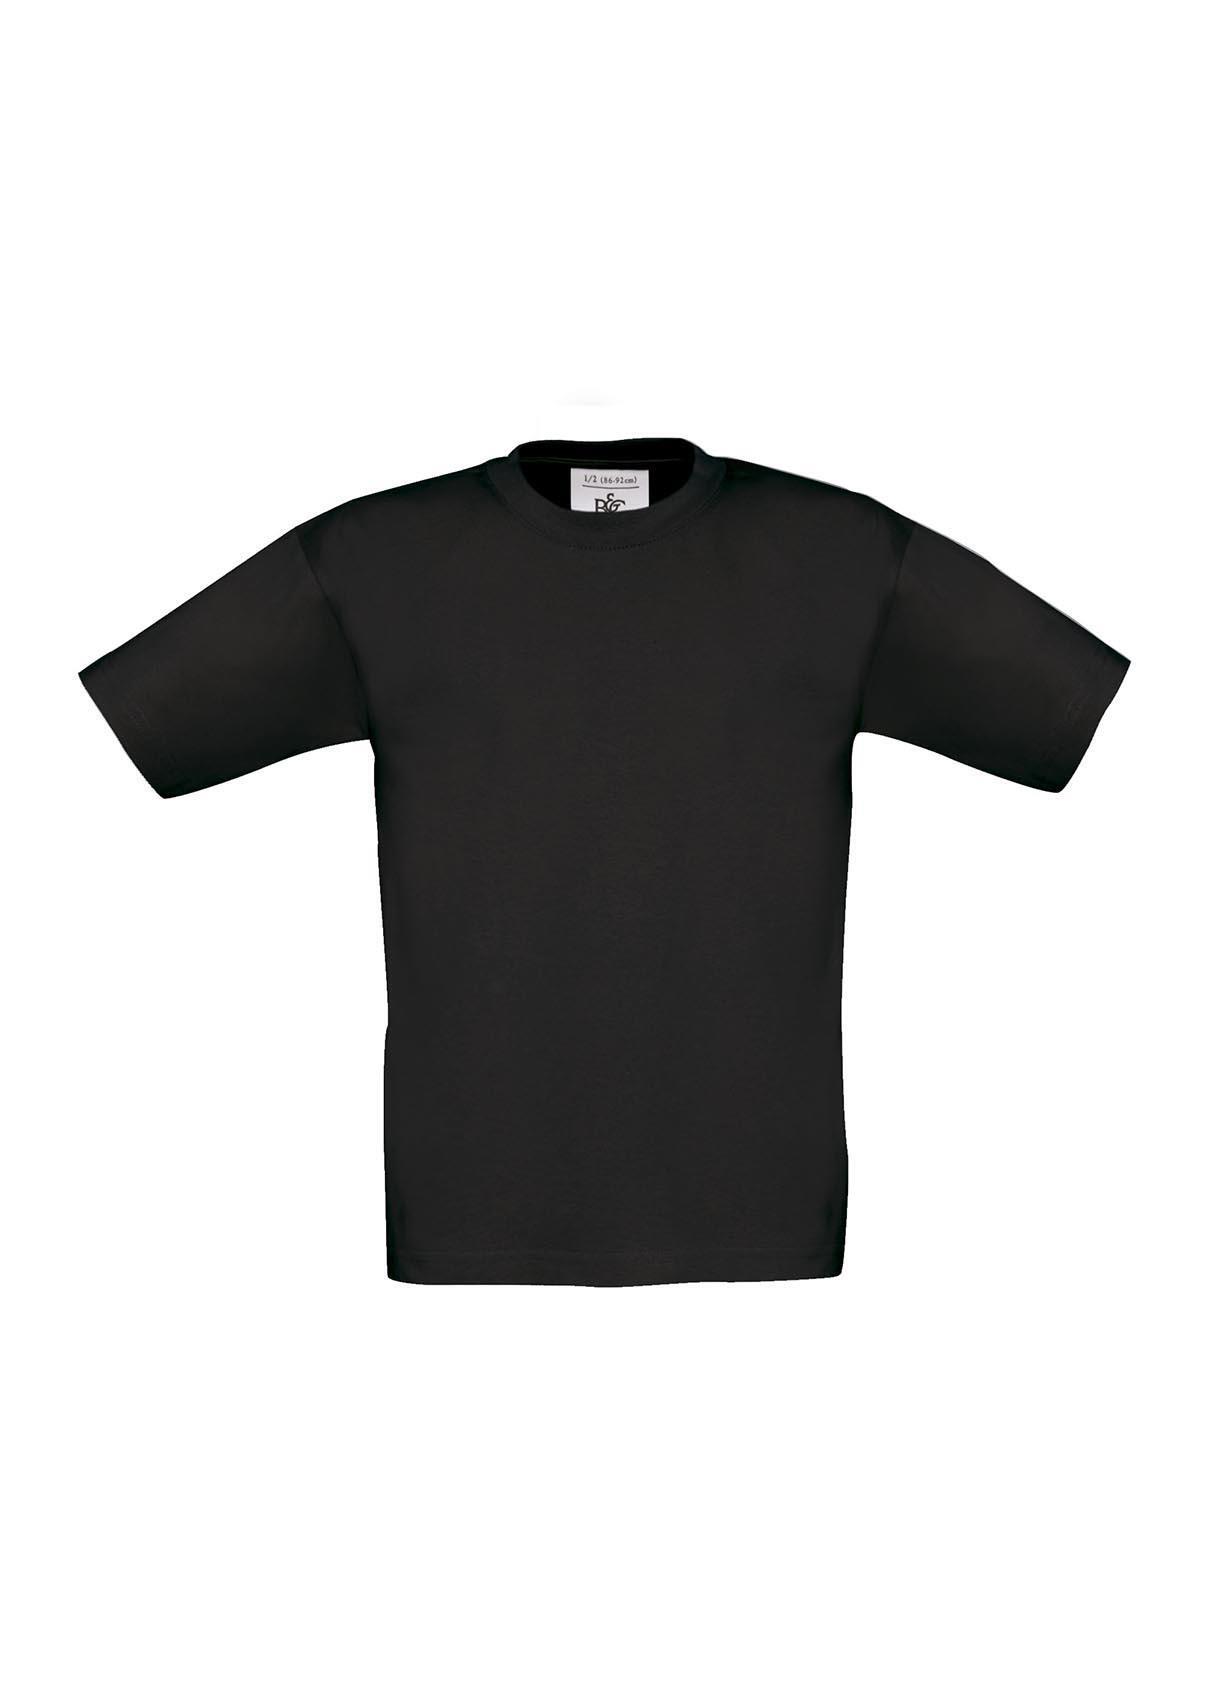 T-shirt voor kids zwart kinder shirt